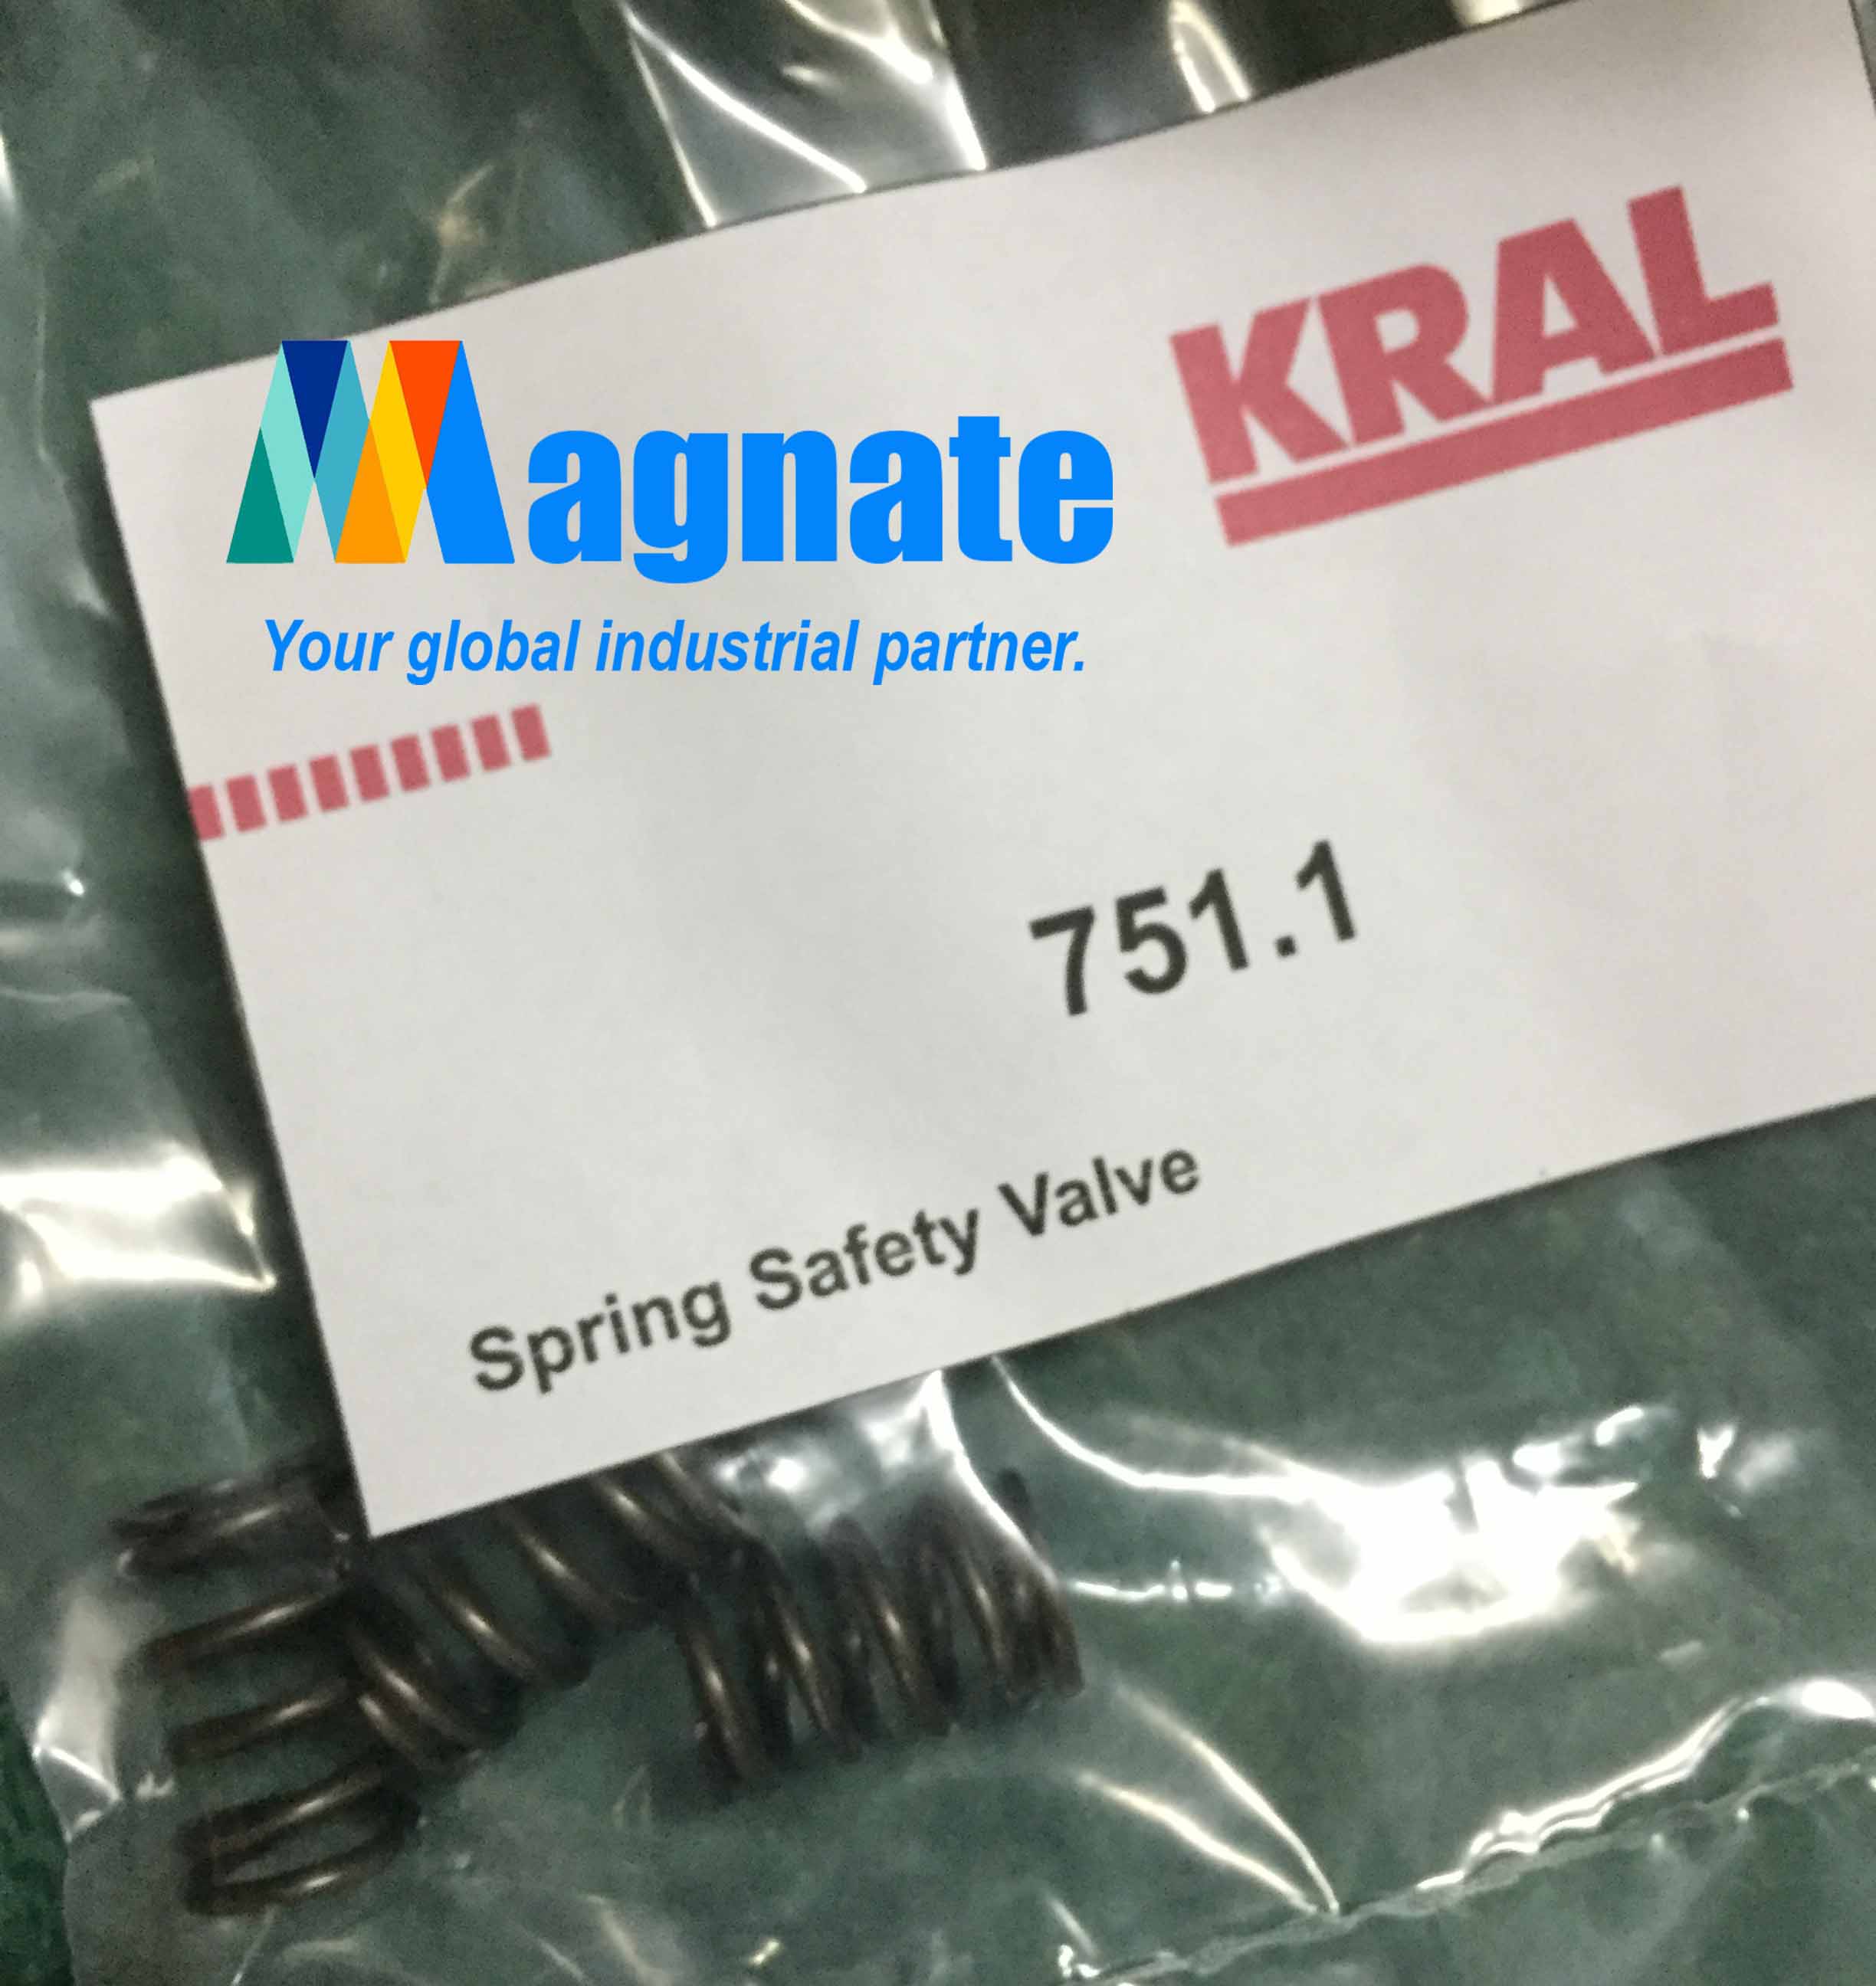  Kral Spring Safety Seal  751.1